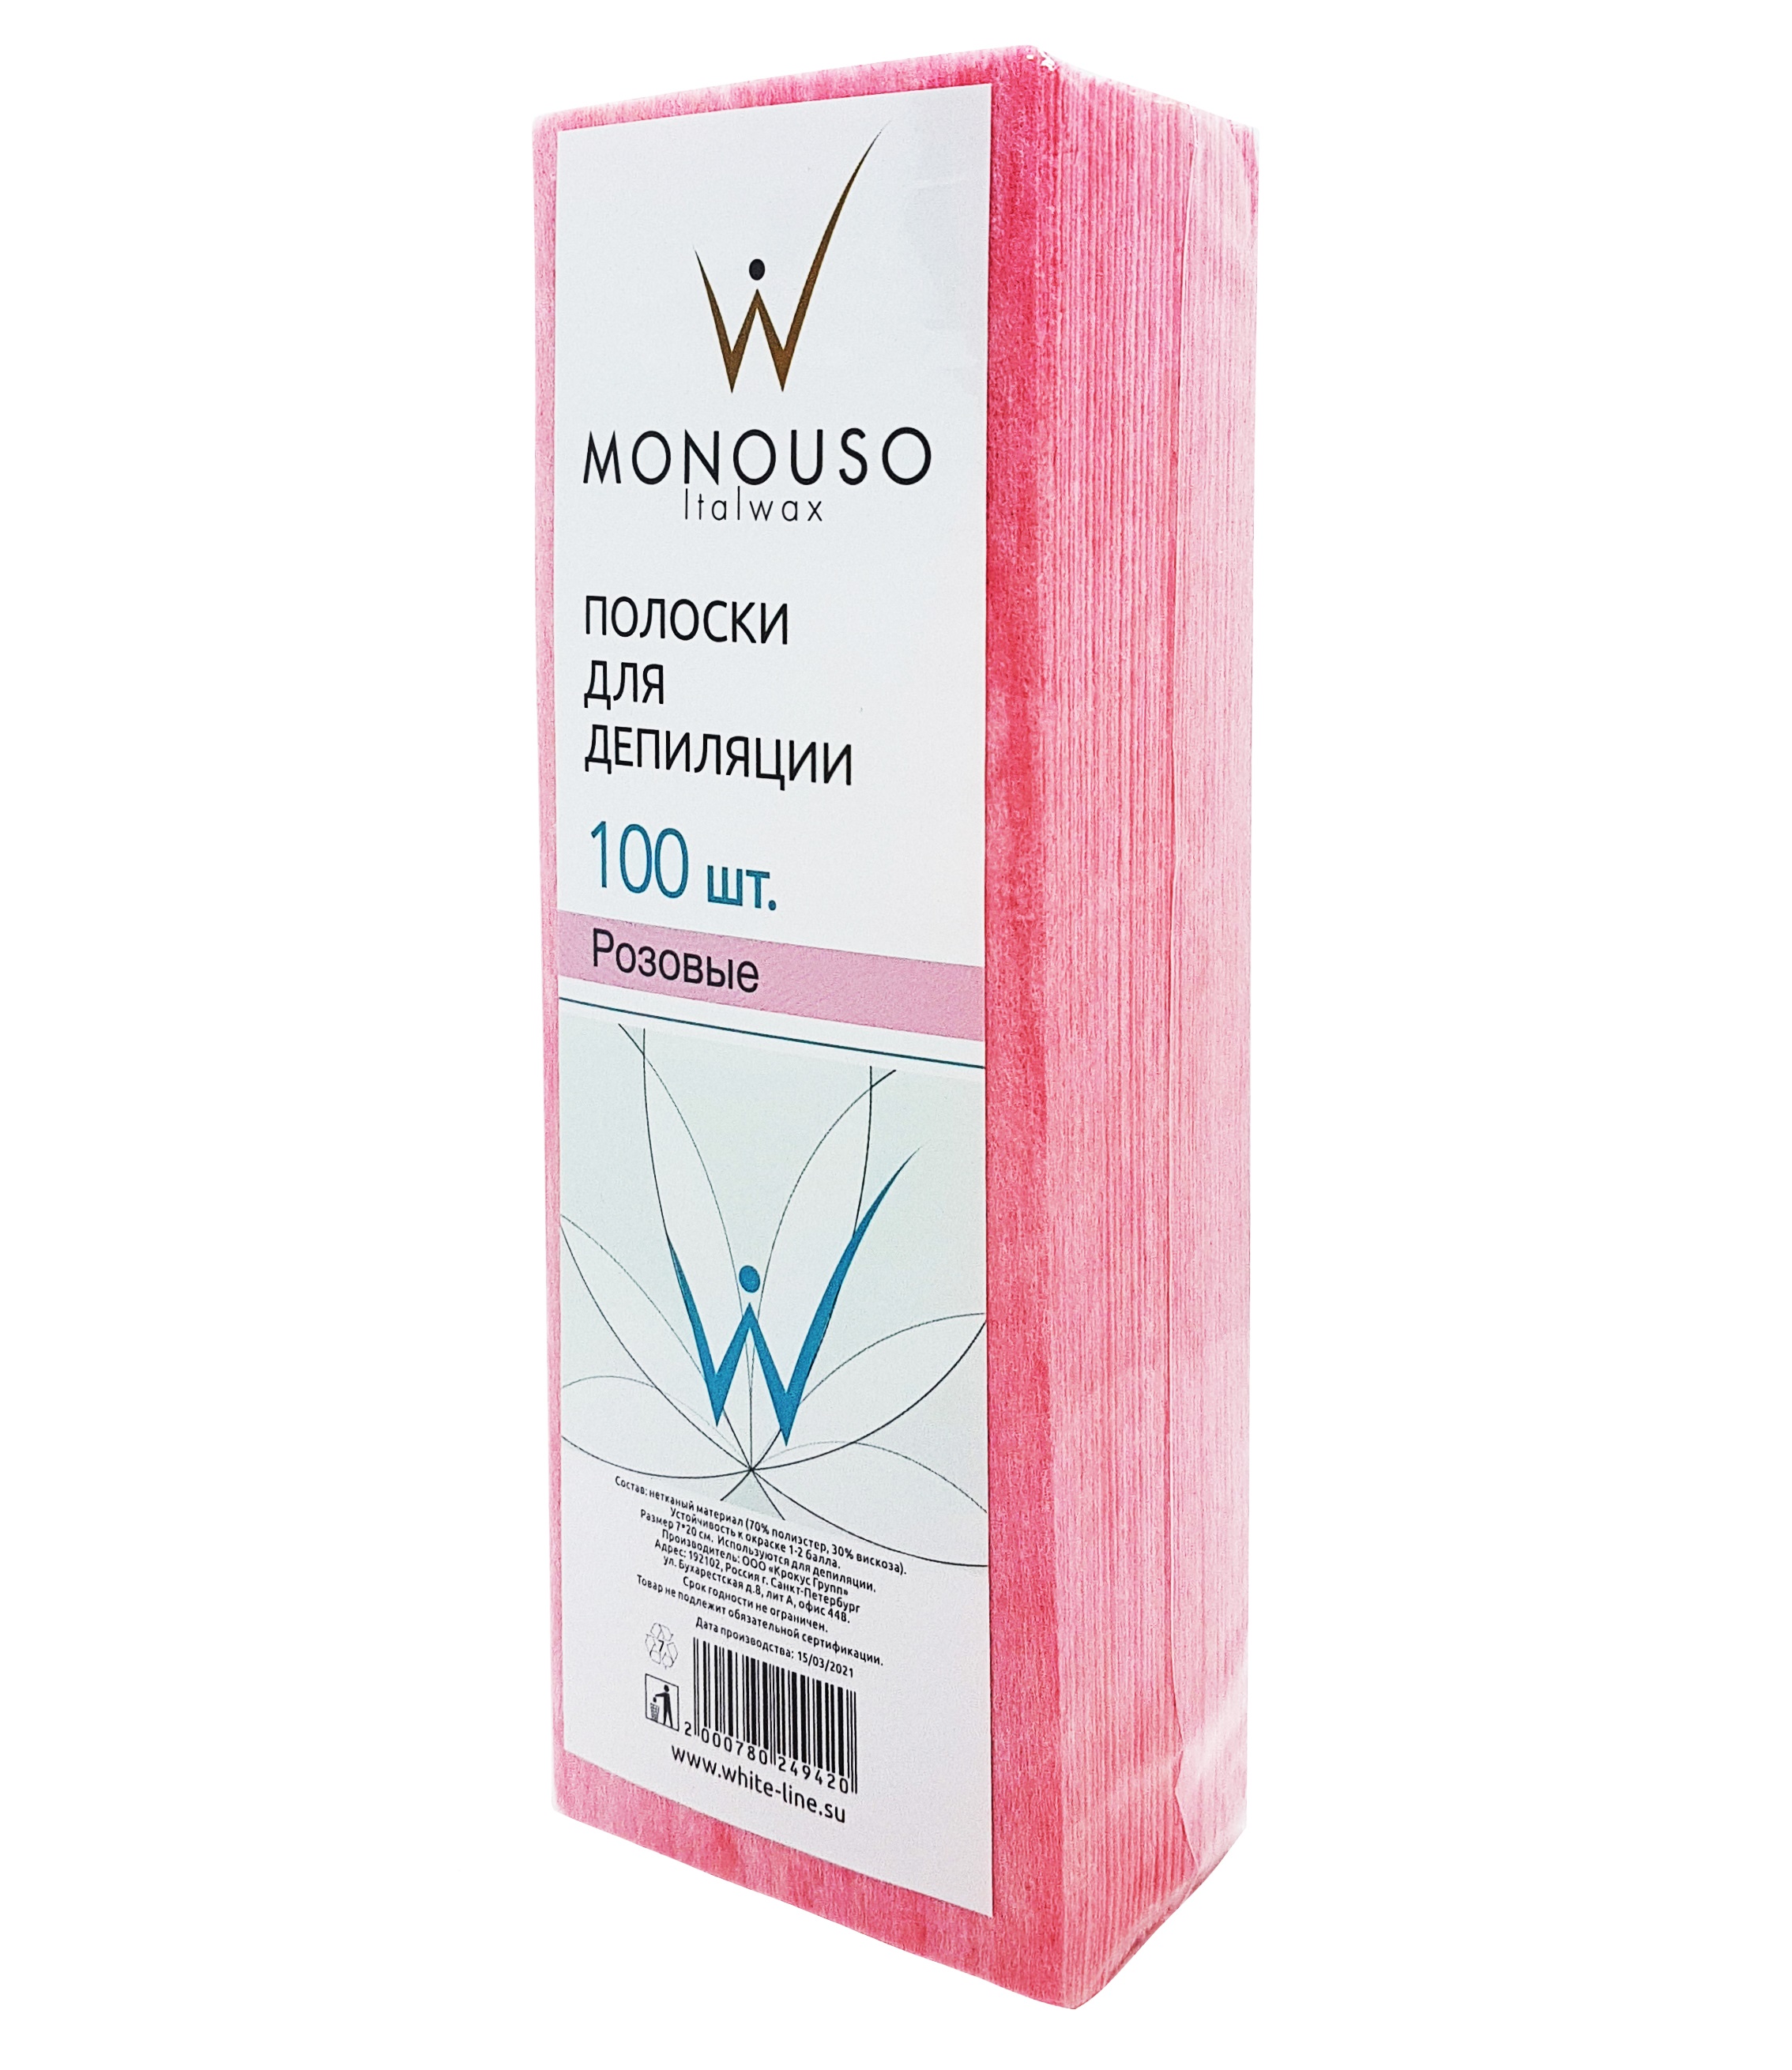 Полоска для депиляции 7х20 MONOUSO №100 штук розовая полоска для депиляции чистовье поливискоза бирюза 50 штук